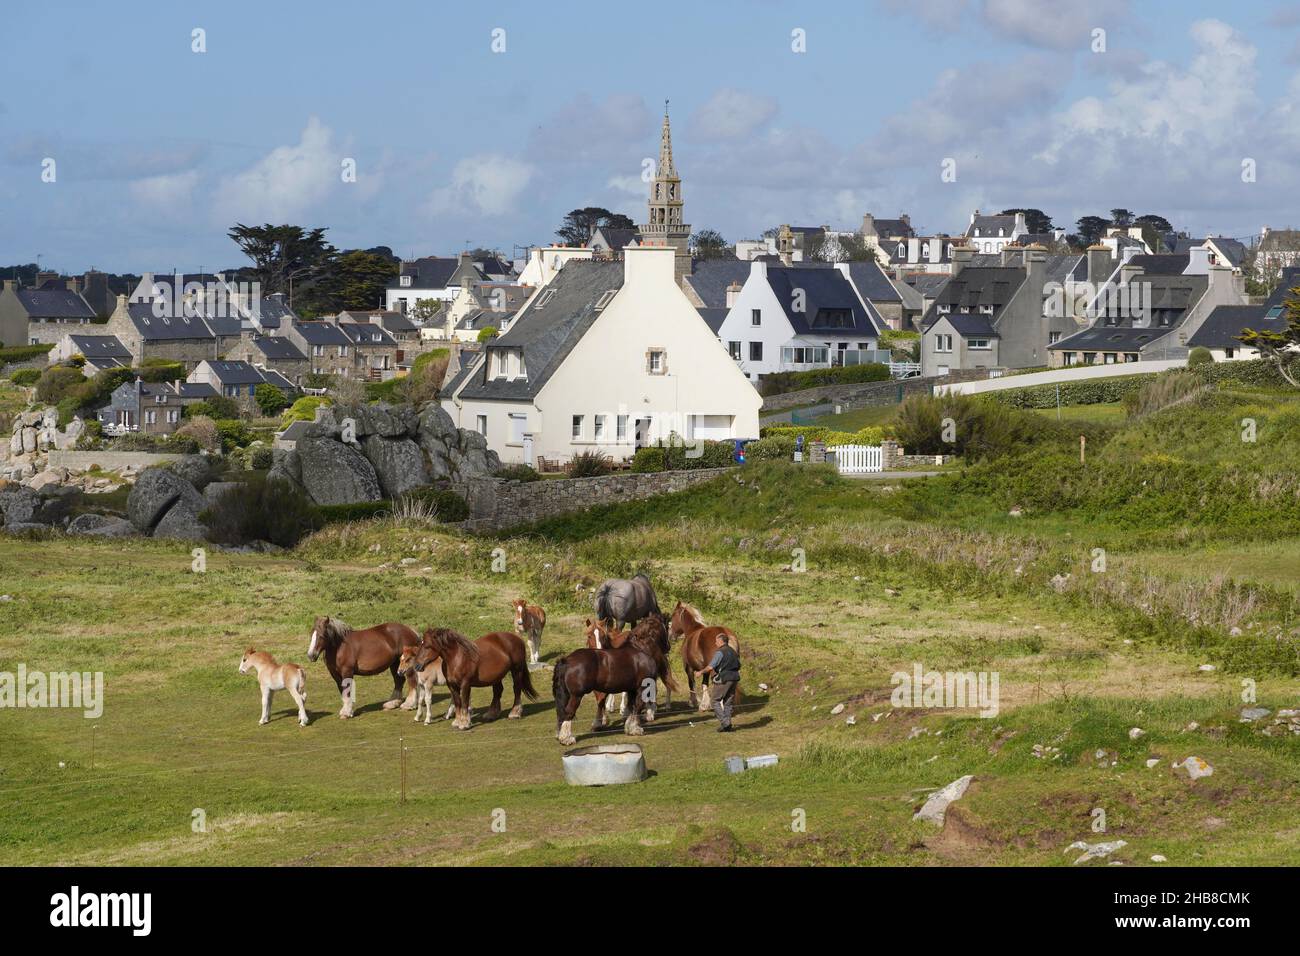 Porspoder (Bretagne, nord-ouest de la France) : troupeau de chevaux de trait breton (mares et foals) dans un champ.Étalon et agriculteur.En arrière-plan, TH Banque D'Images